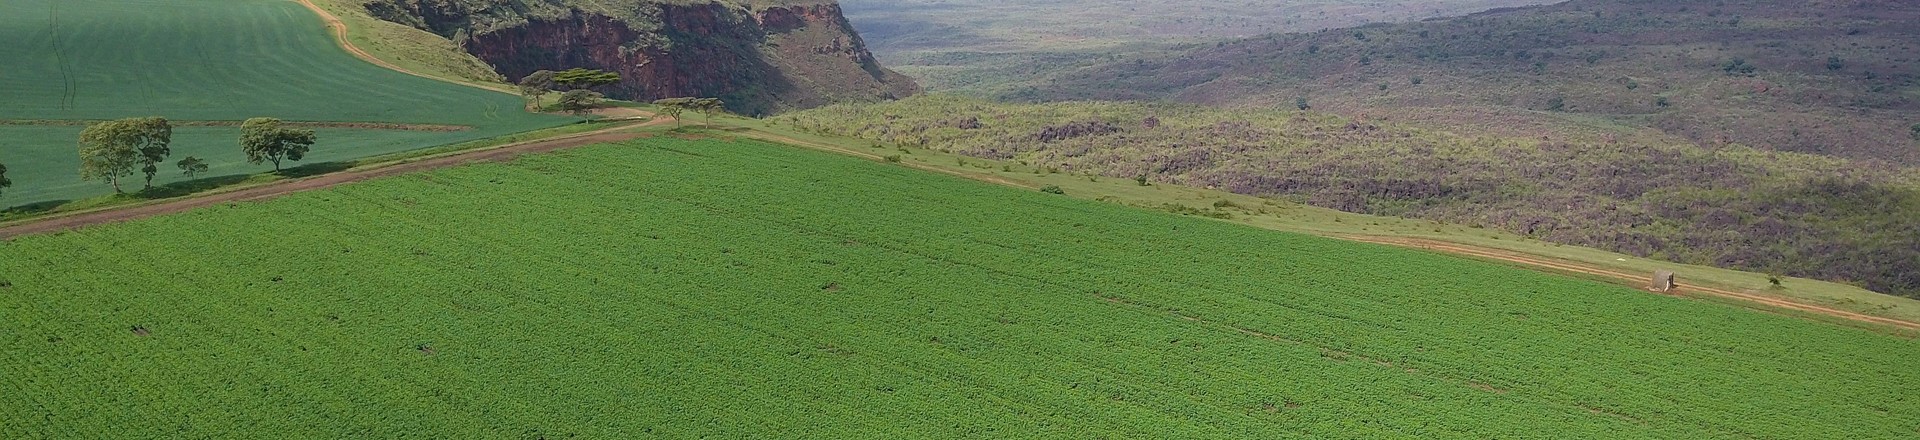 Overview of a Kenyan potato field